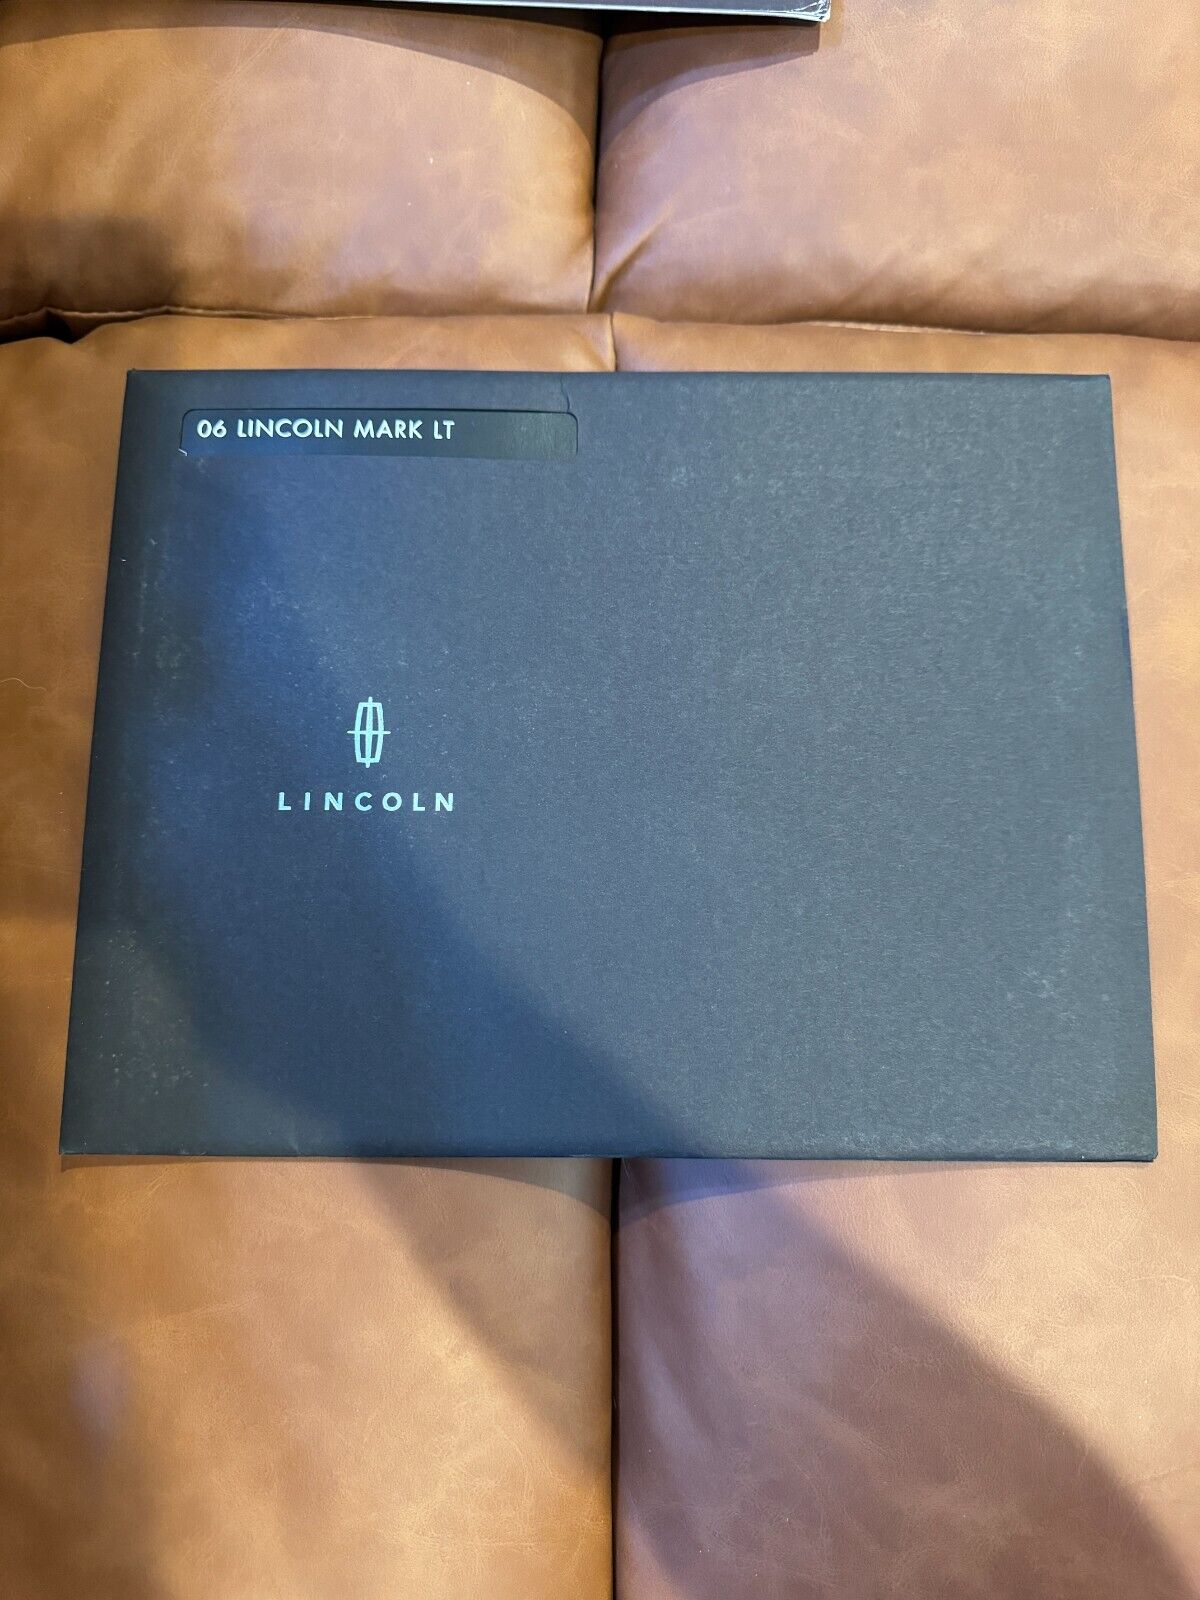 2006 Lincoln Mark LT sales brochure sealed in envelope